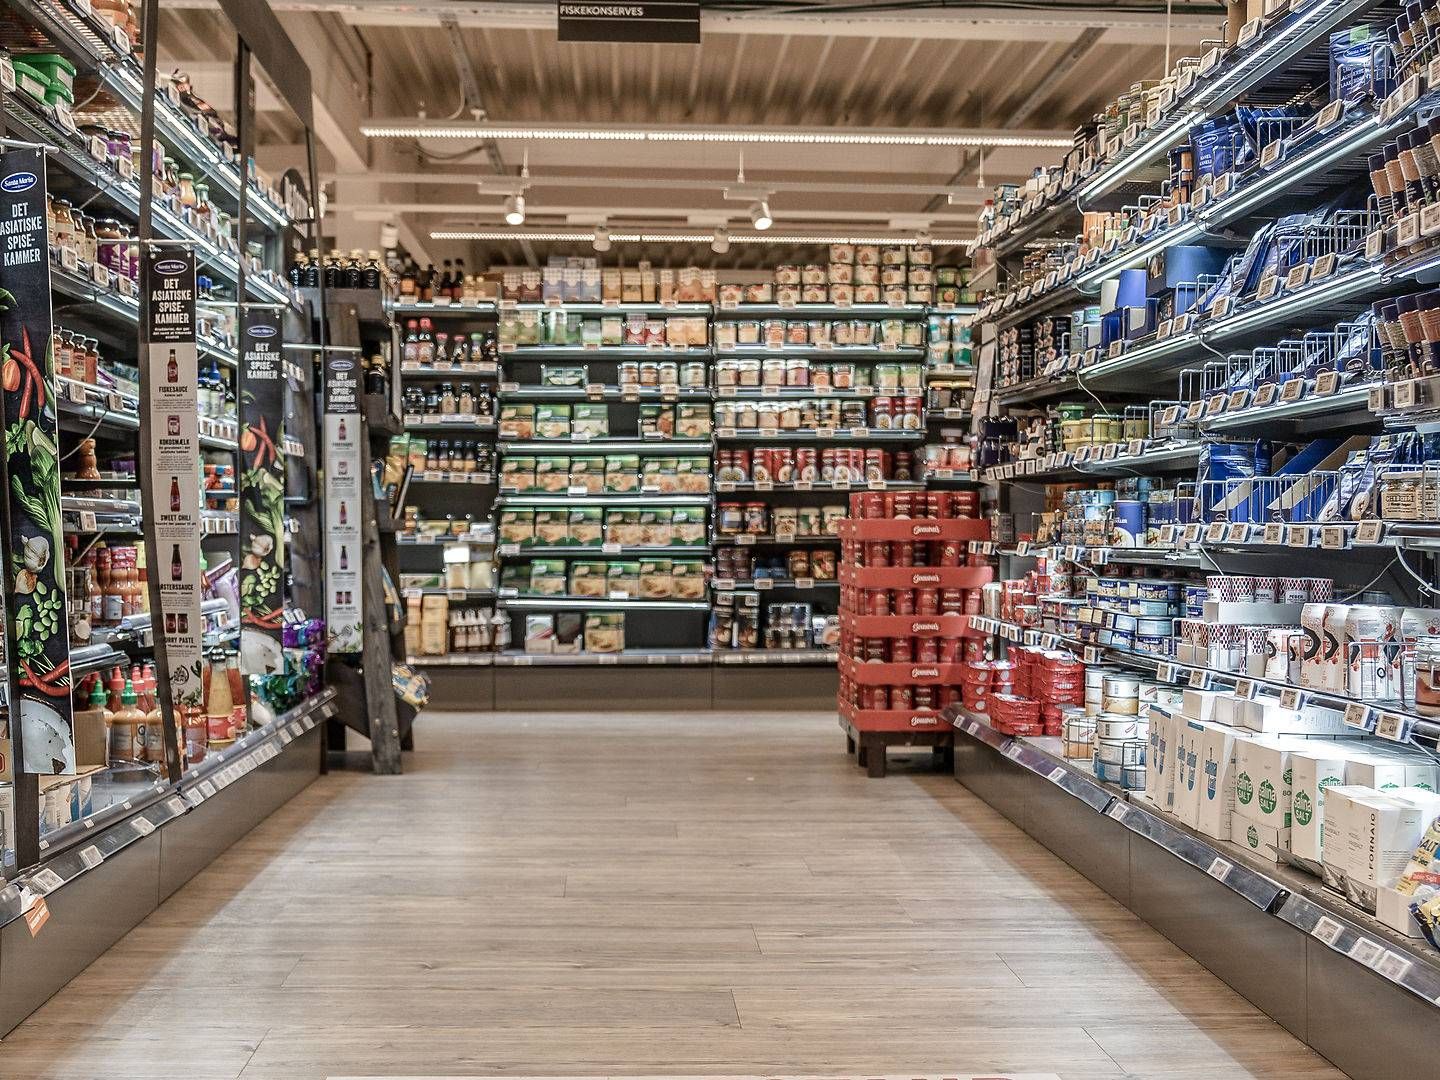 Priserne i de norske supermarkeder stiger igen 1. februar - minister er bekymret for udviklingen. | Foto: Aleksander Klug/Ritzau Scanpix